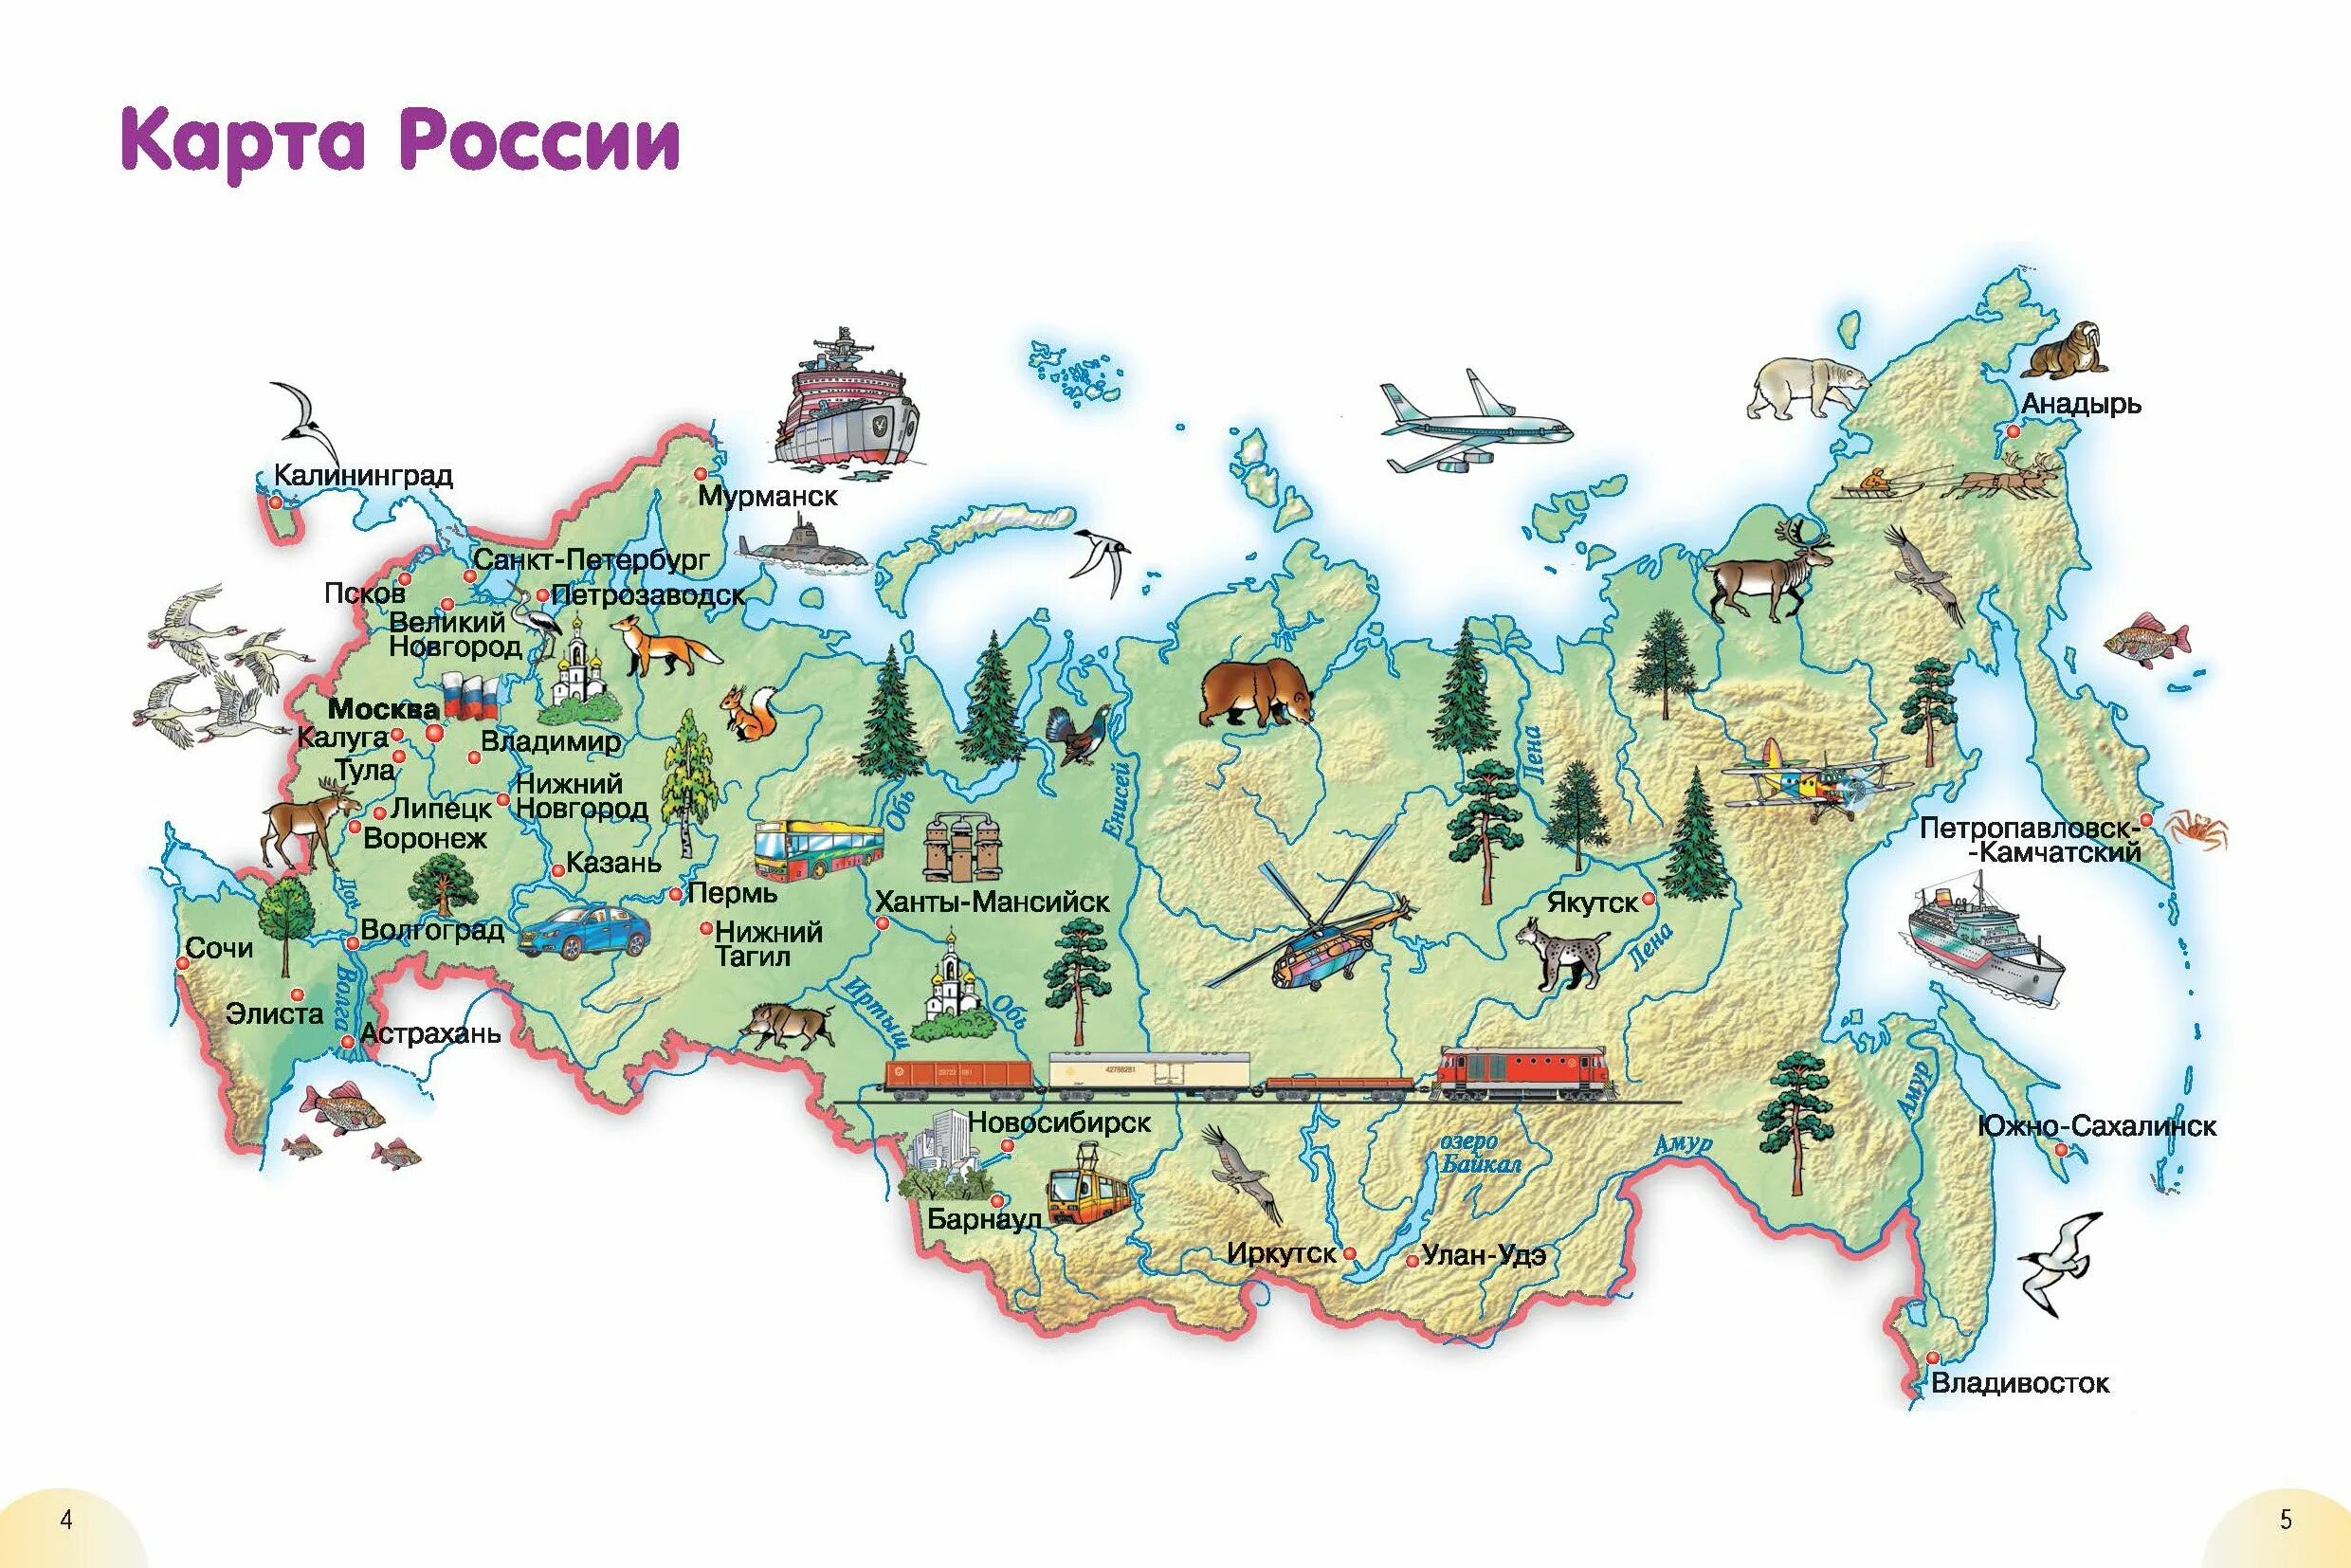 Карта России с городами для детей 1 класса. Карта России для детей дошкольного возраста. Карта Росси для детей дшкольного возраста. Картатроссии для детей.